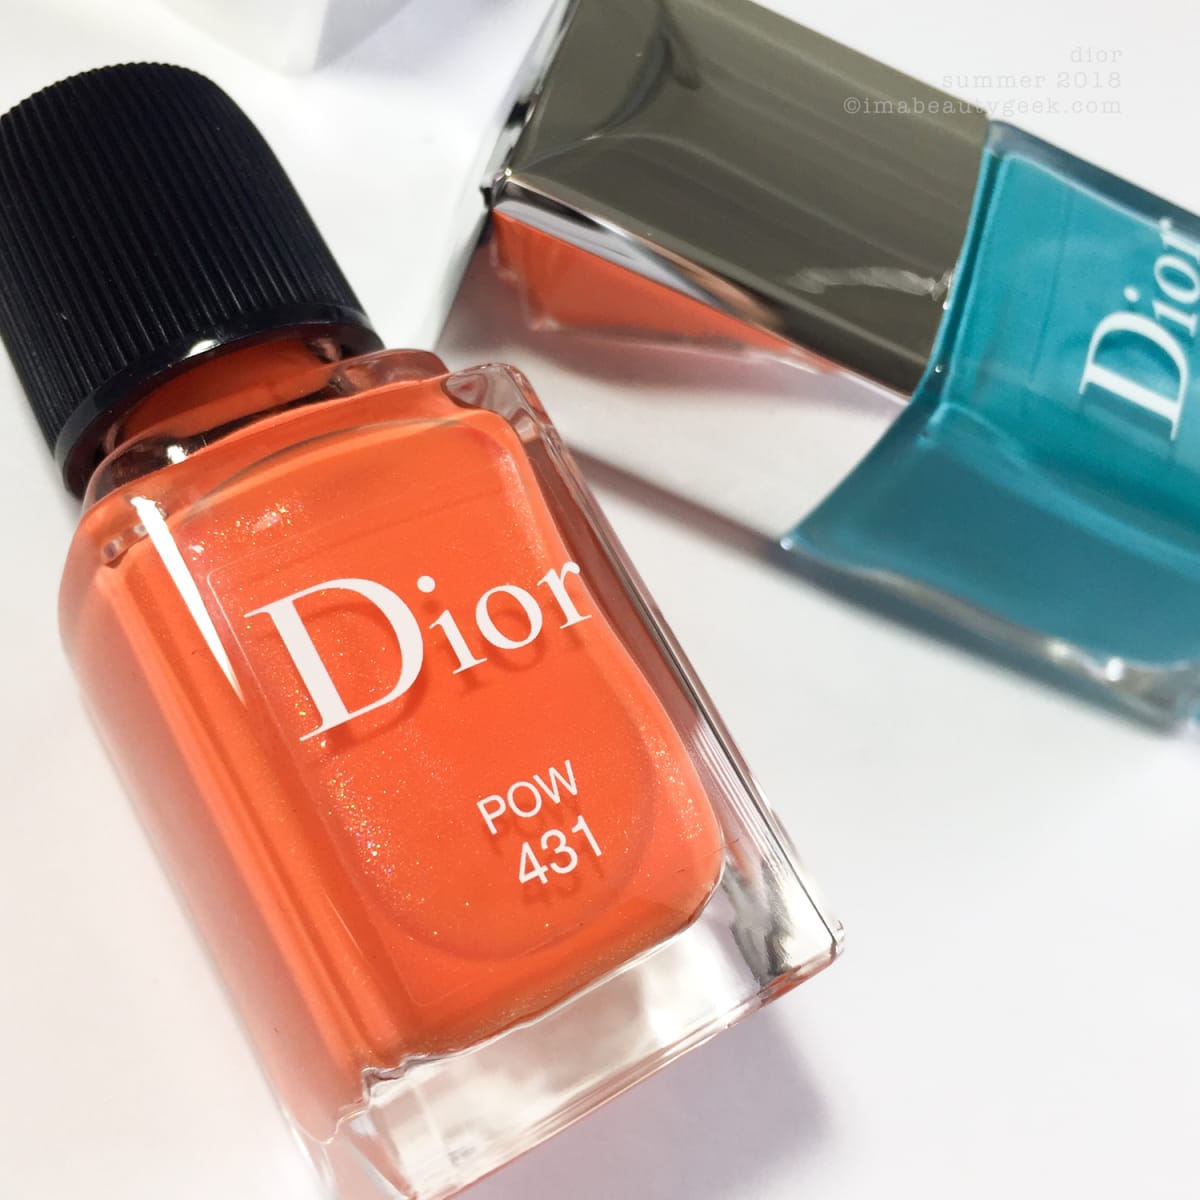 dior nail polish summer 2019